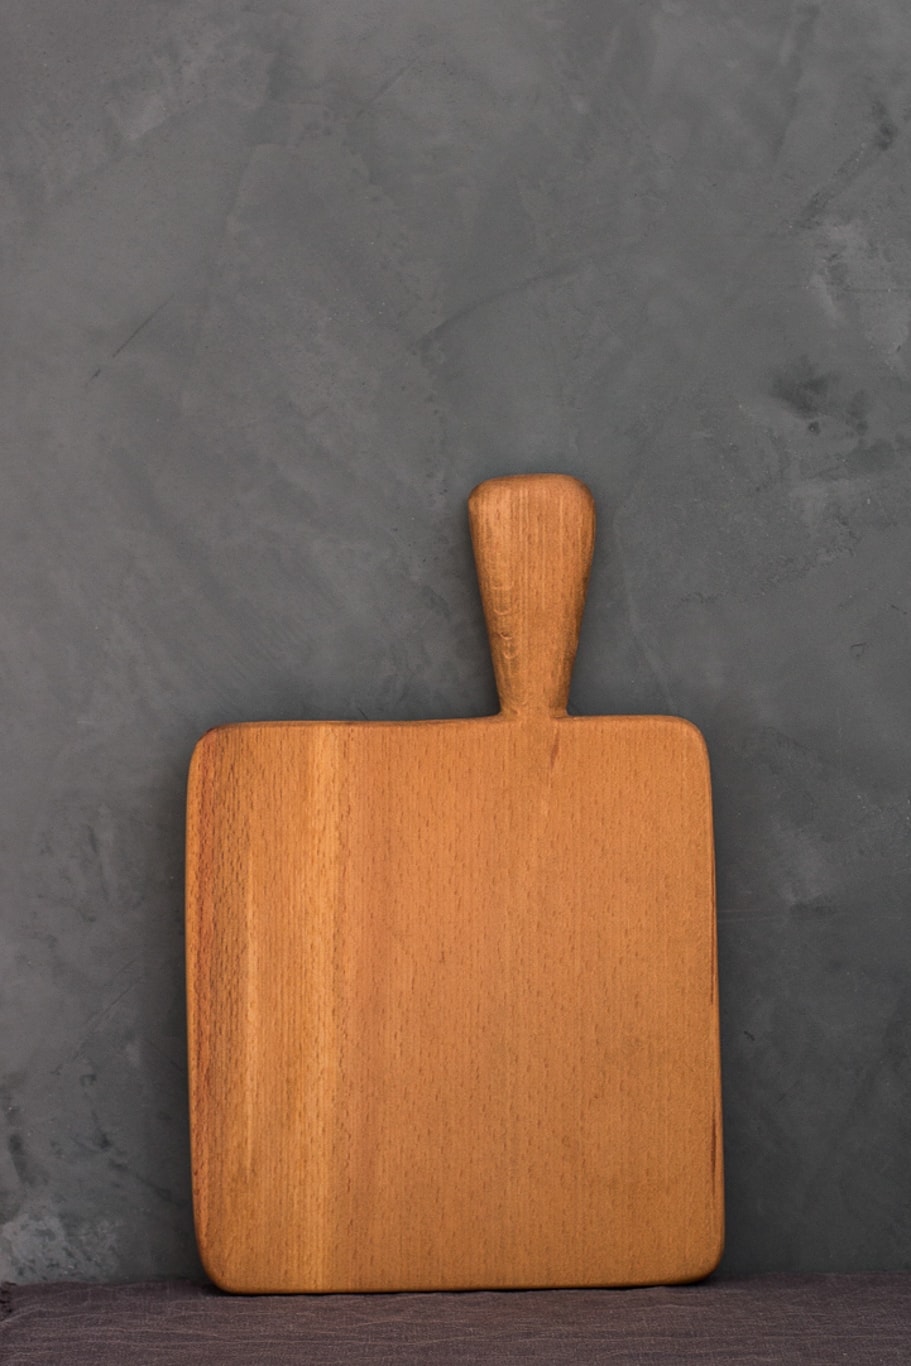 square cutting board